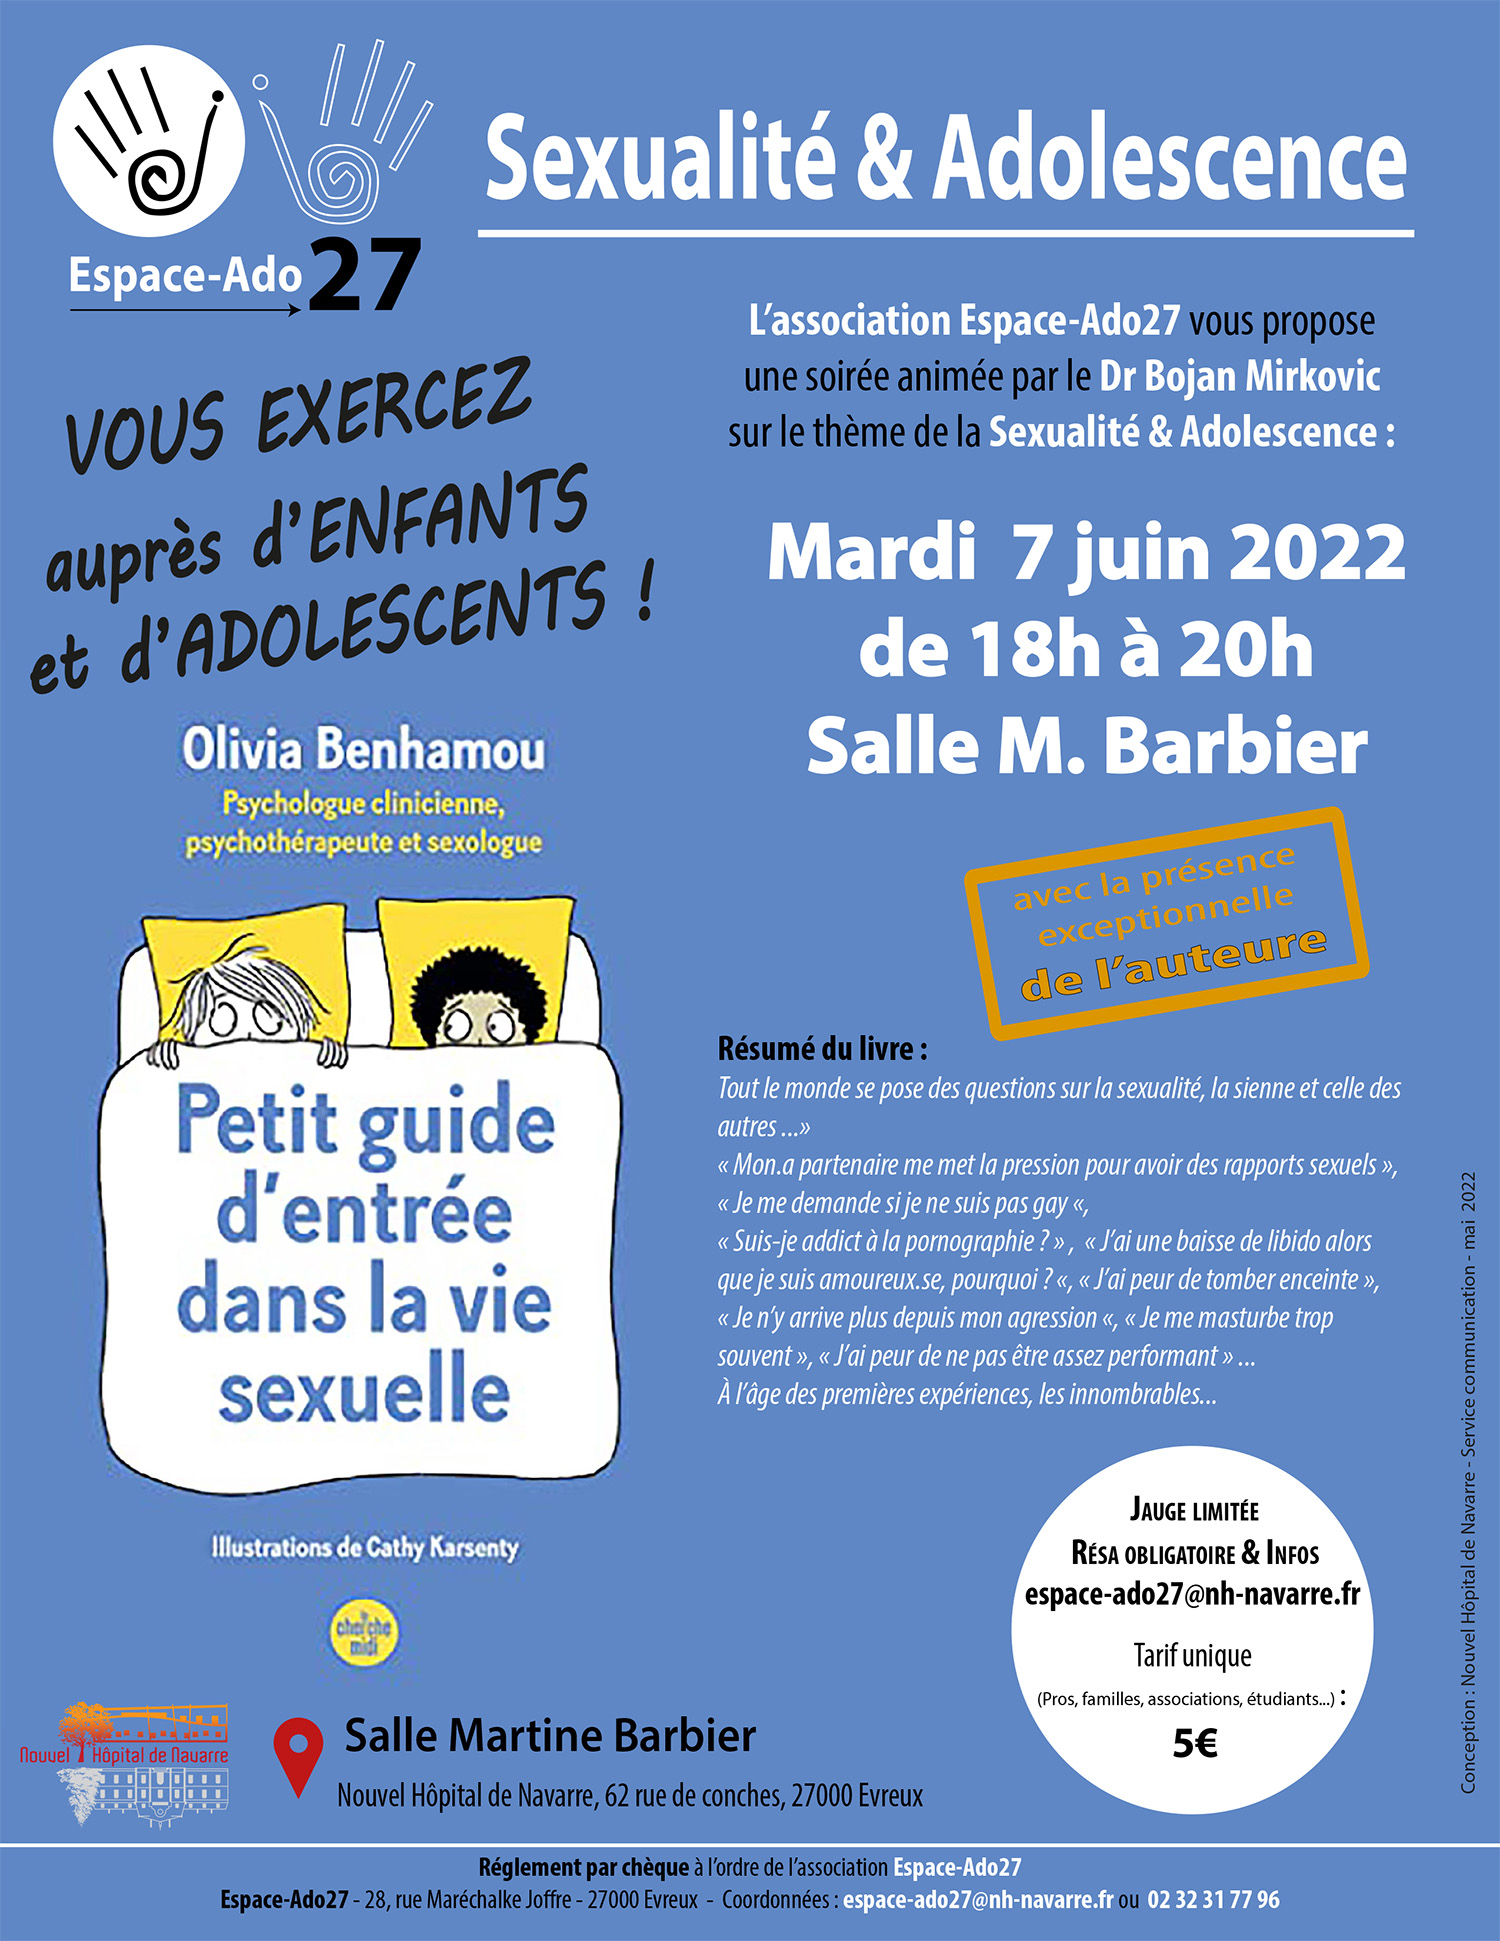 Soirée-Débat "Sexualité & Adolescence" – 7 juin 2022